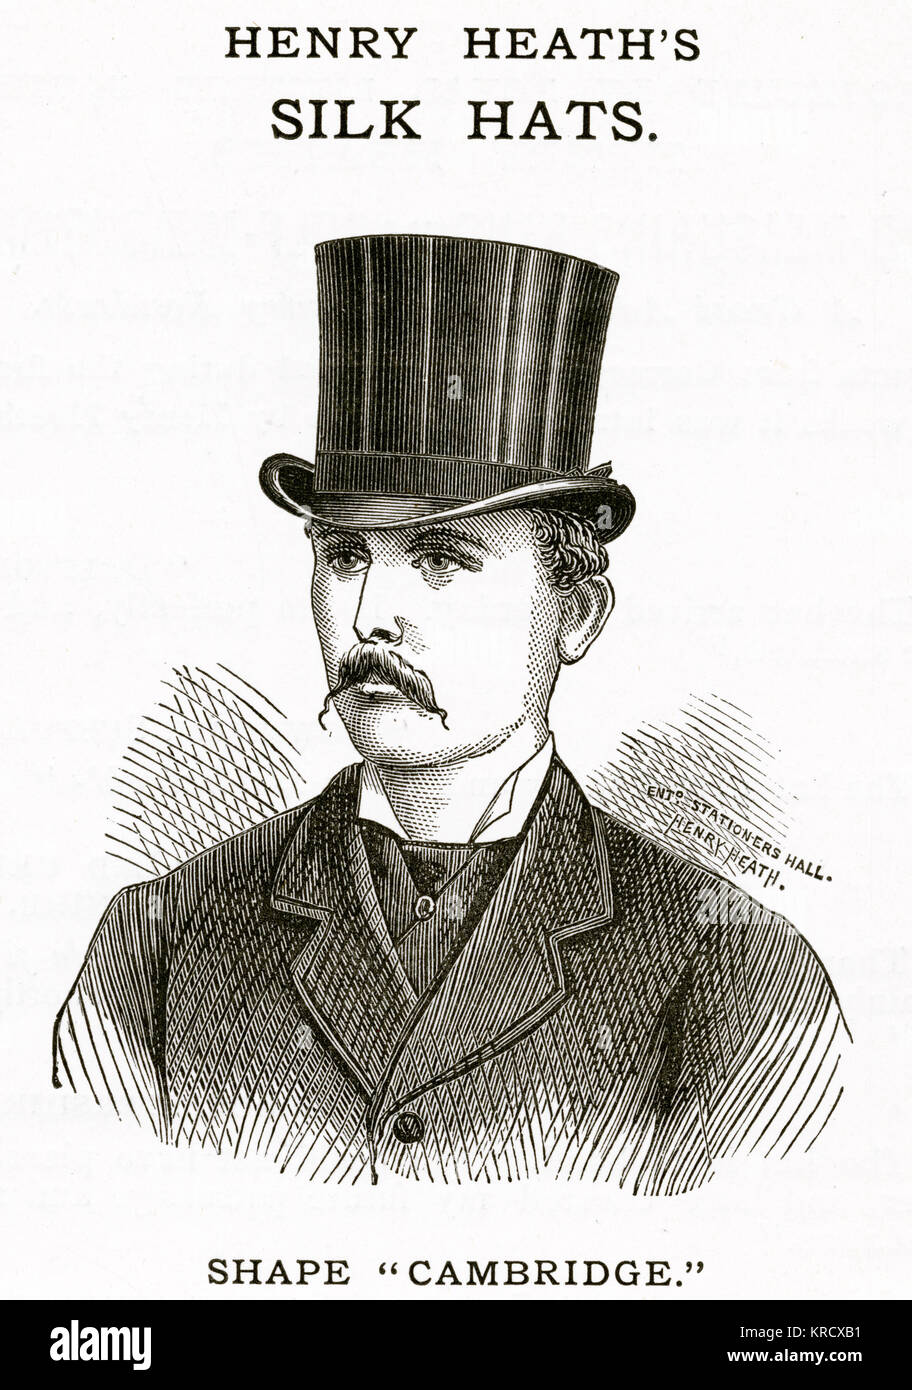 Henry Heath, chapeaux de soie pour hommes 1880 Banque D'Images